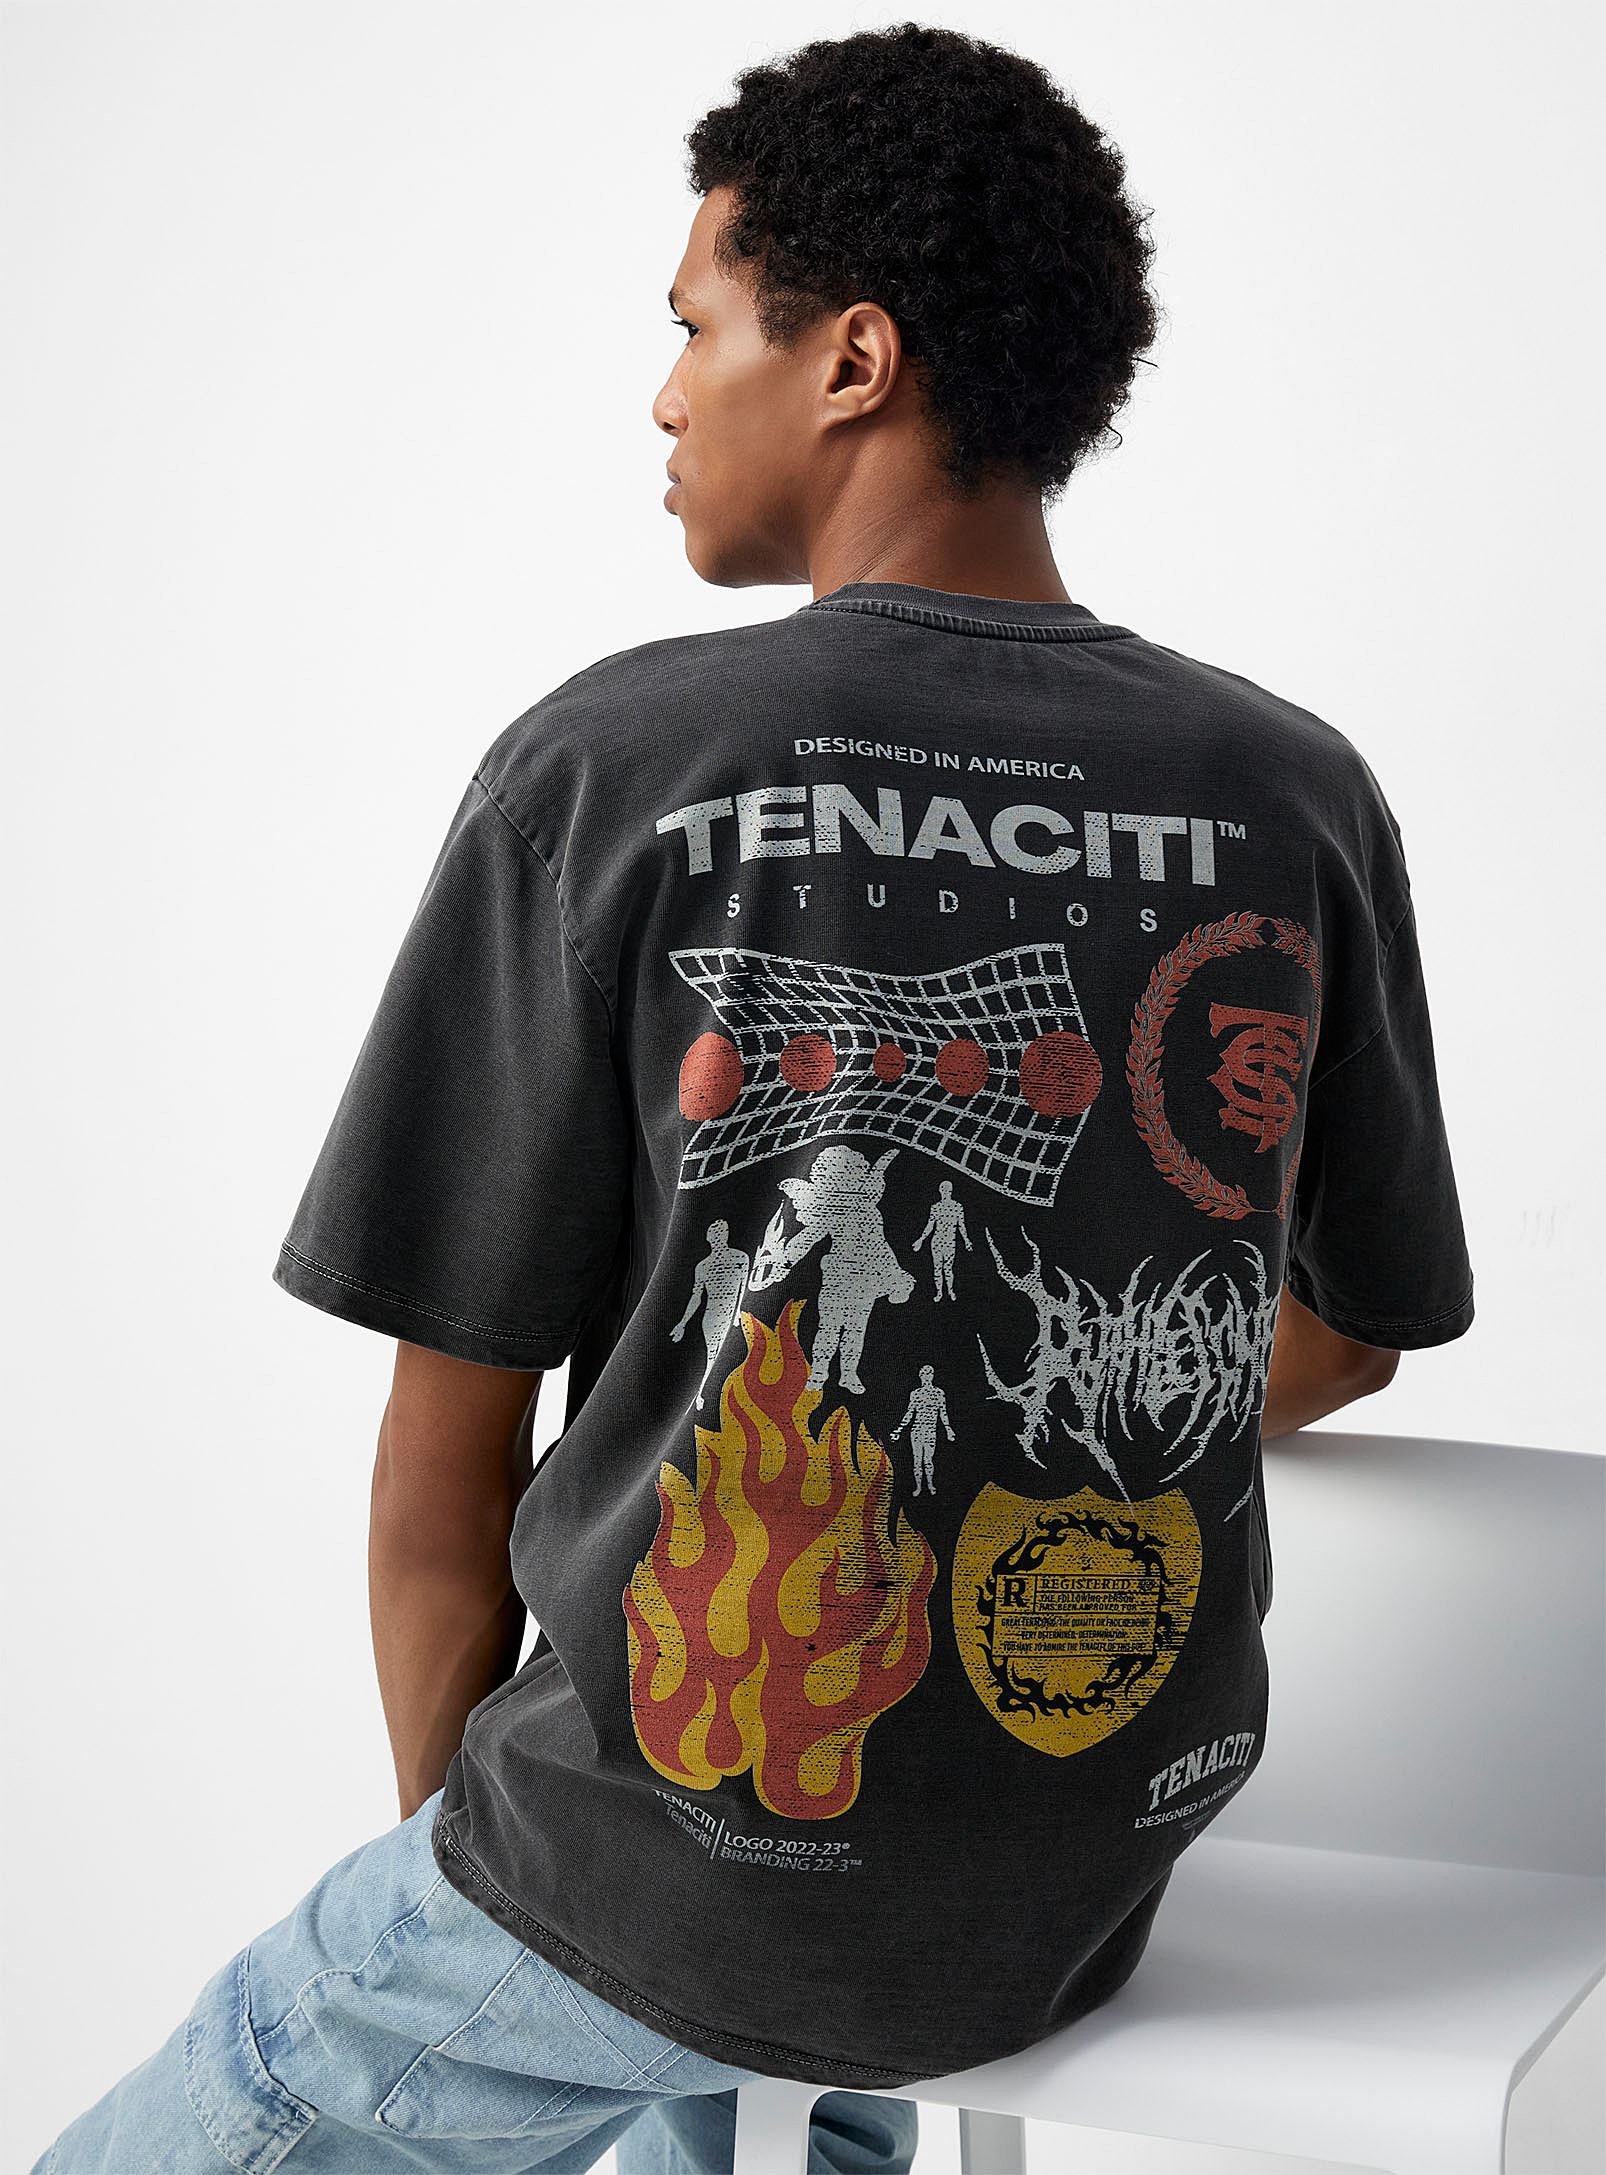 Tenaciti - Men's Studios T-shirt